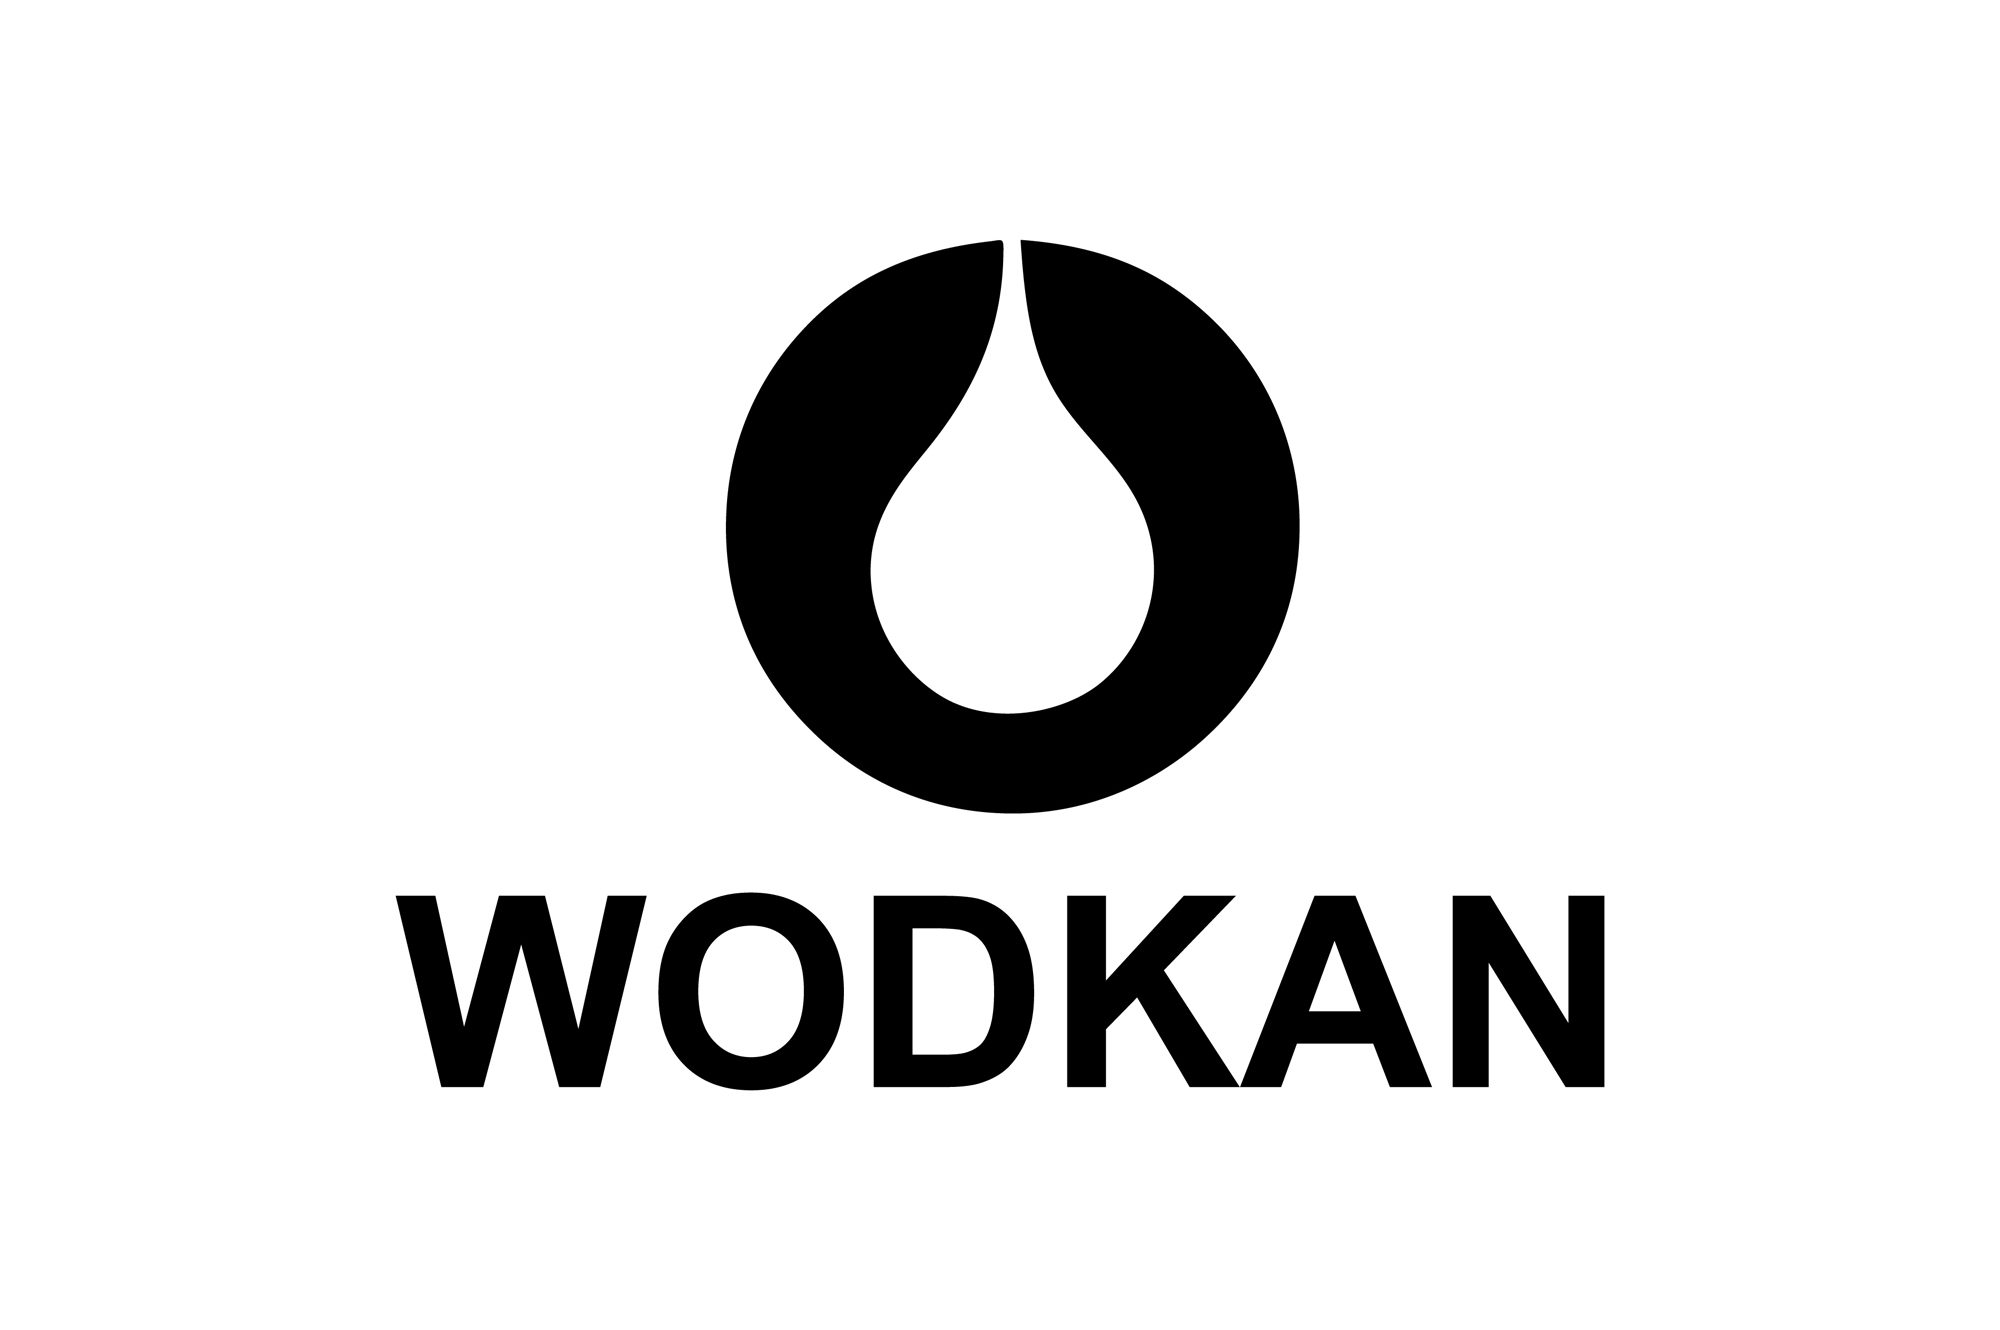 Wodkan - logo PLANSZA 30x30cm EDYCJA